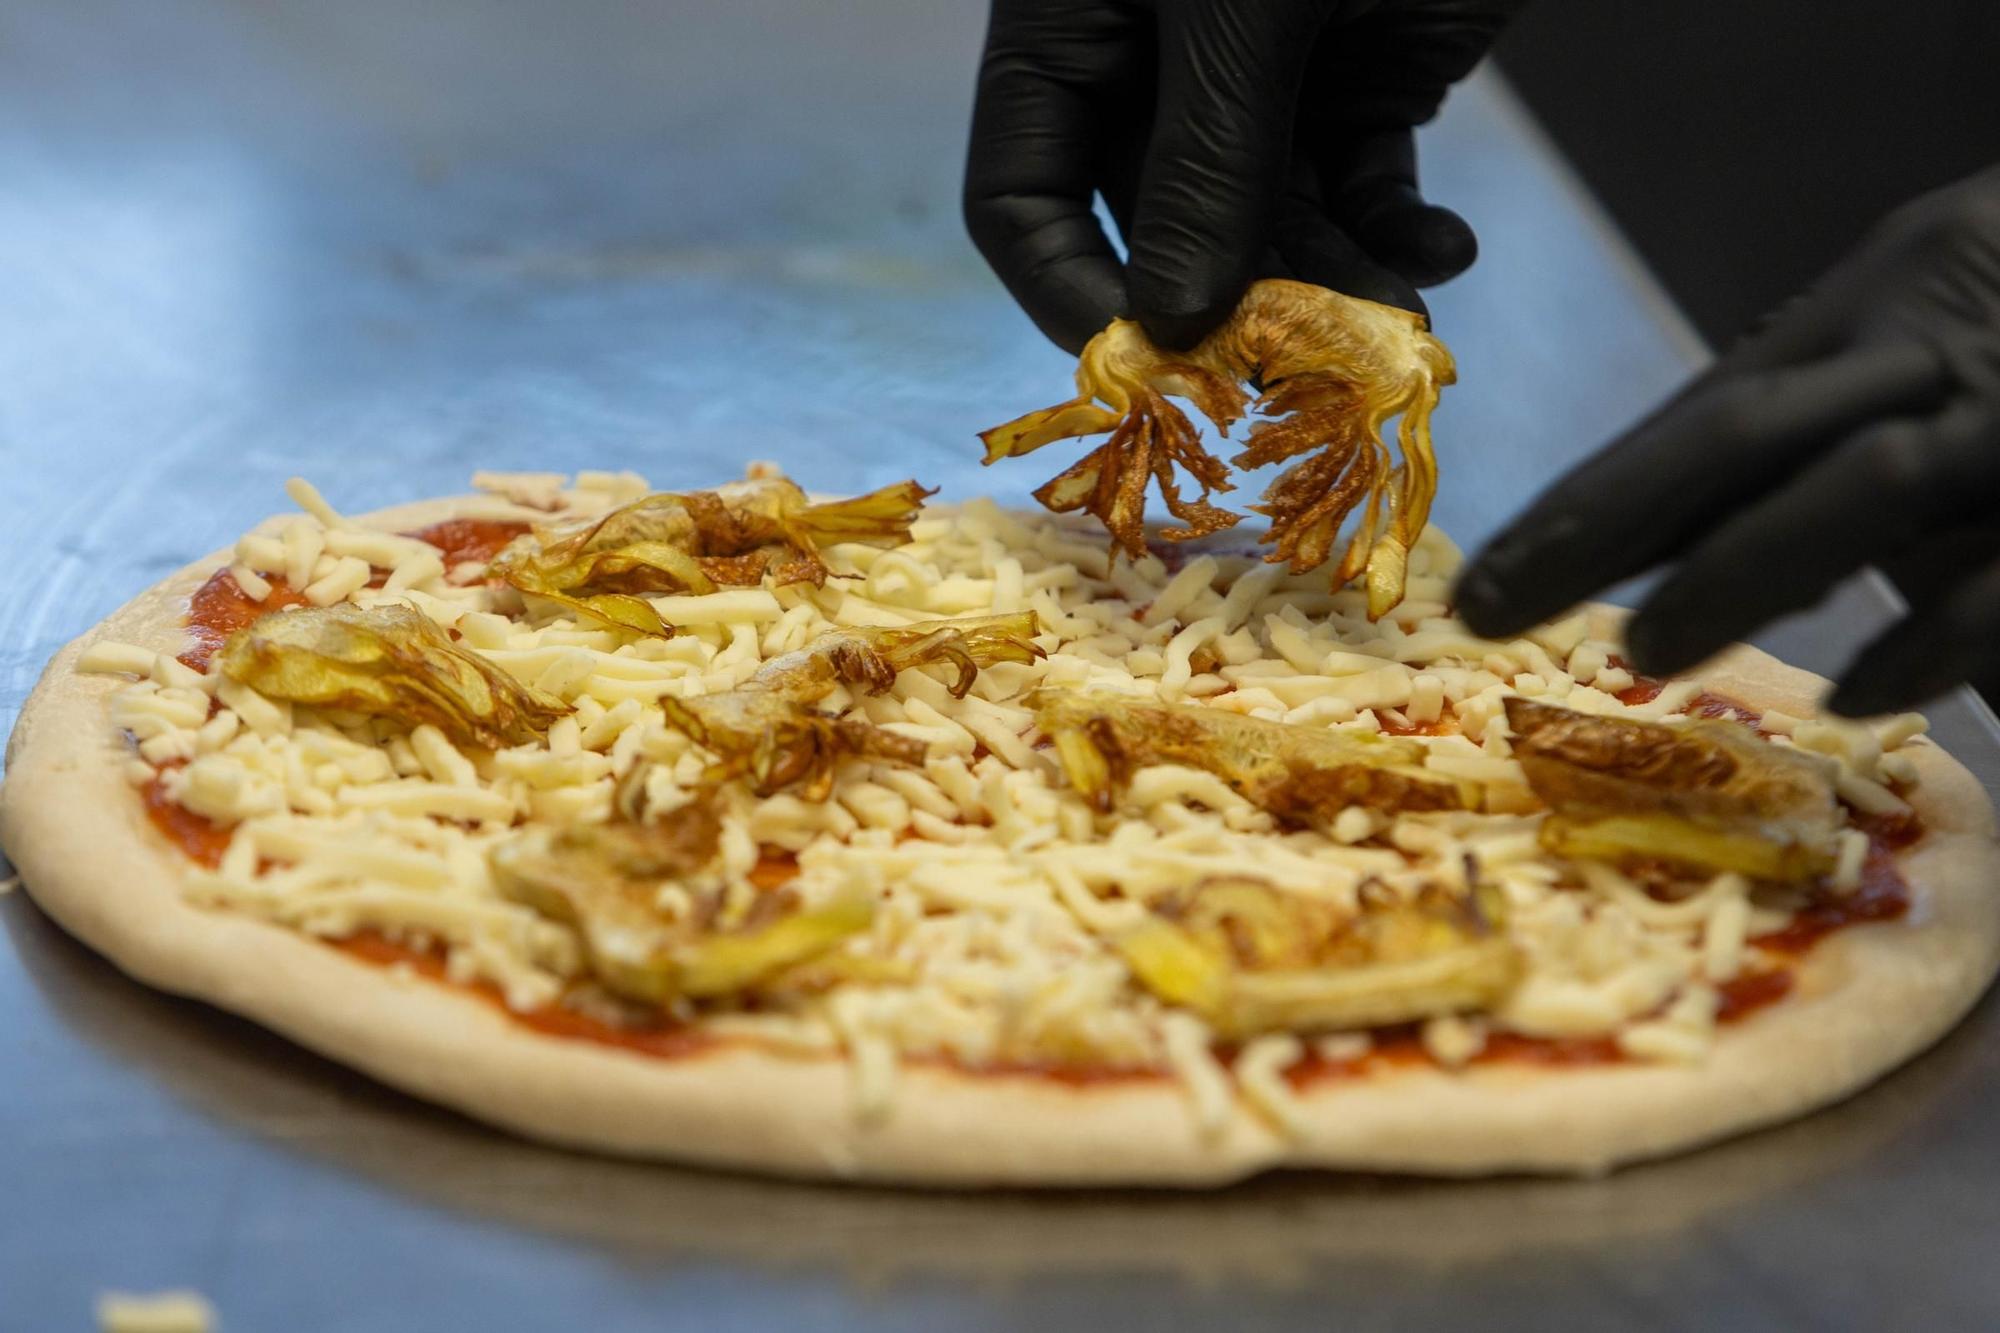 Servipizza elabora artesanalmente sus pizzas en su propio obrador